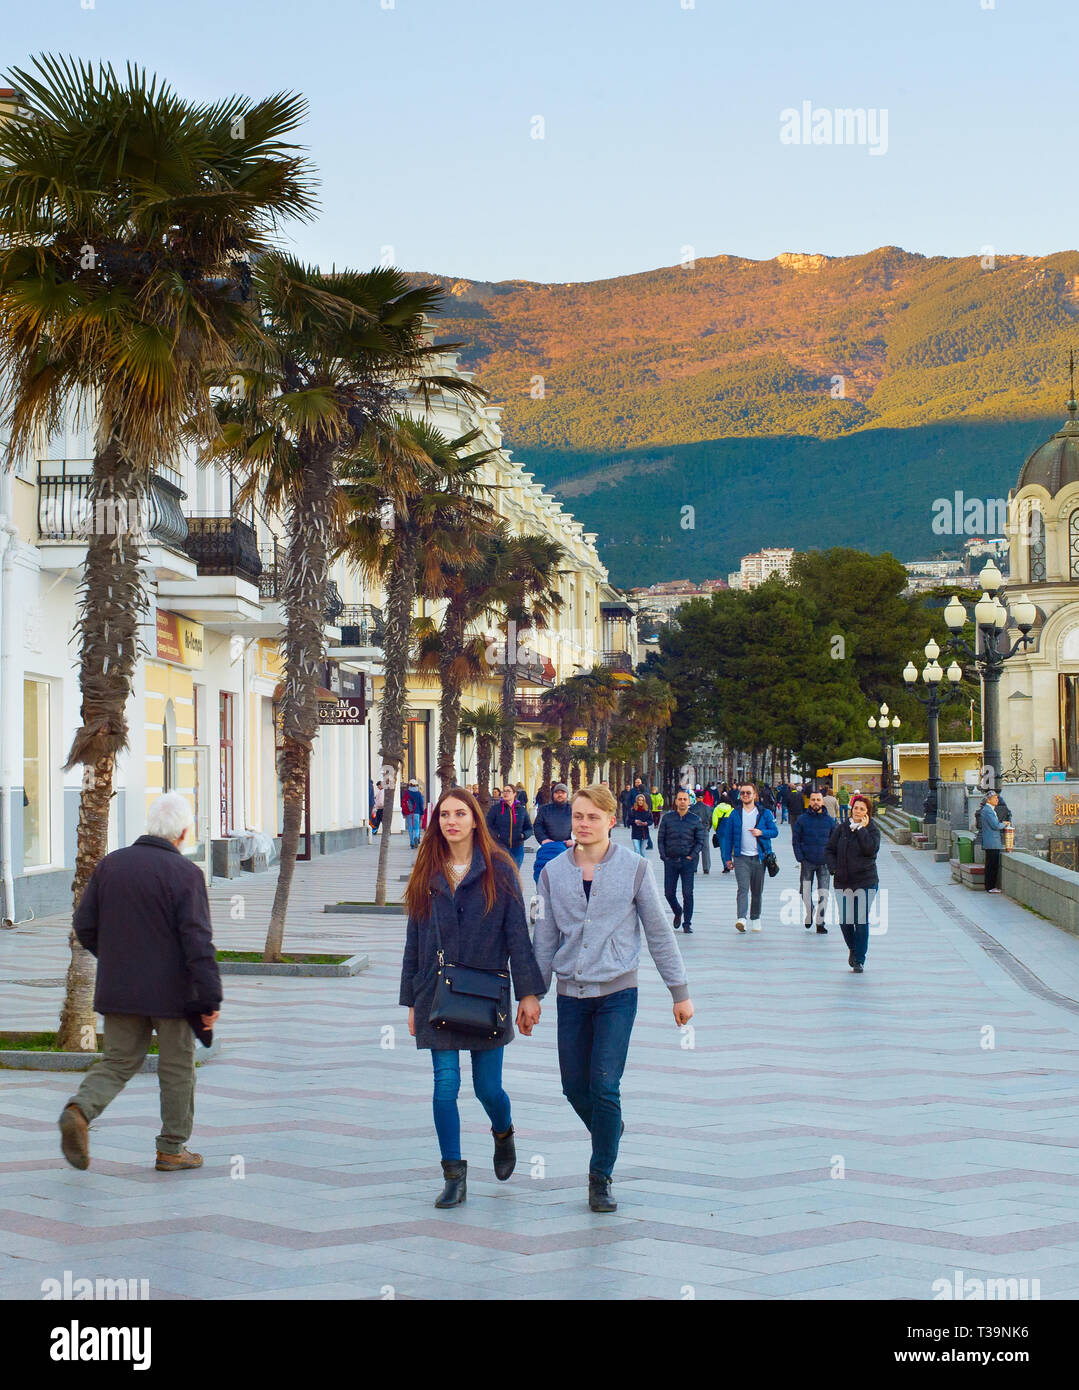 YALTA, Crimée, Ukraine - avril 03, 2018 : Couple walking par Yalta, promenade au coucher du soleil. Yalta est la plus célèbre destination touristique en Crimée Banque D'Images